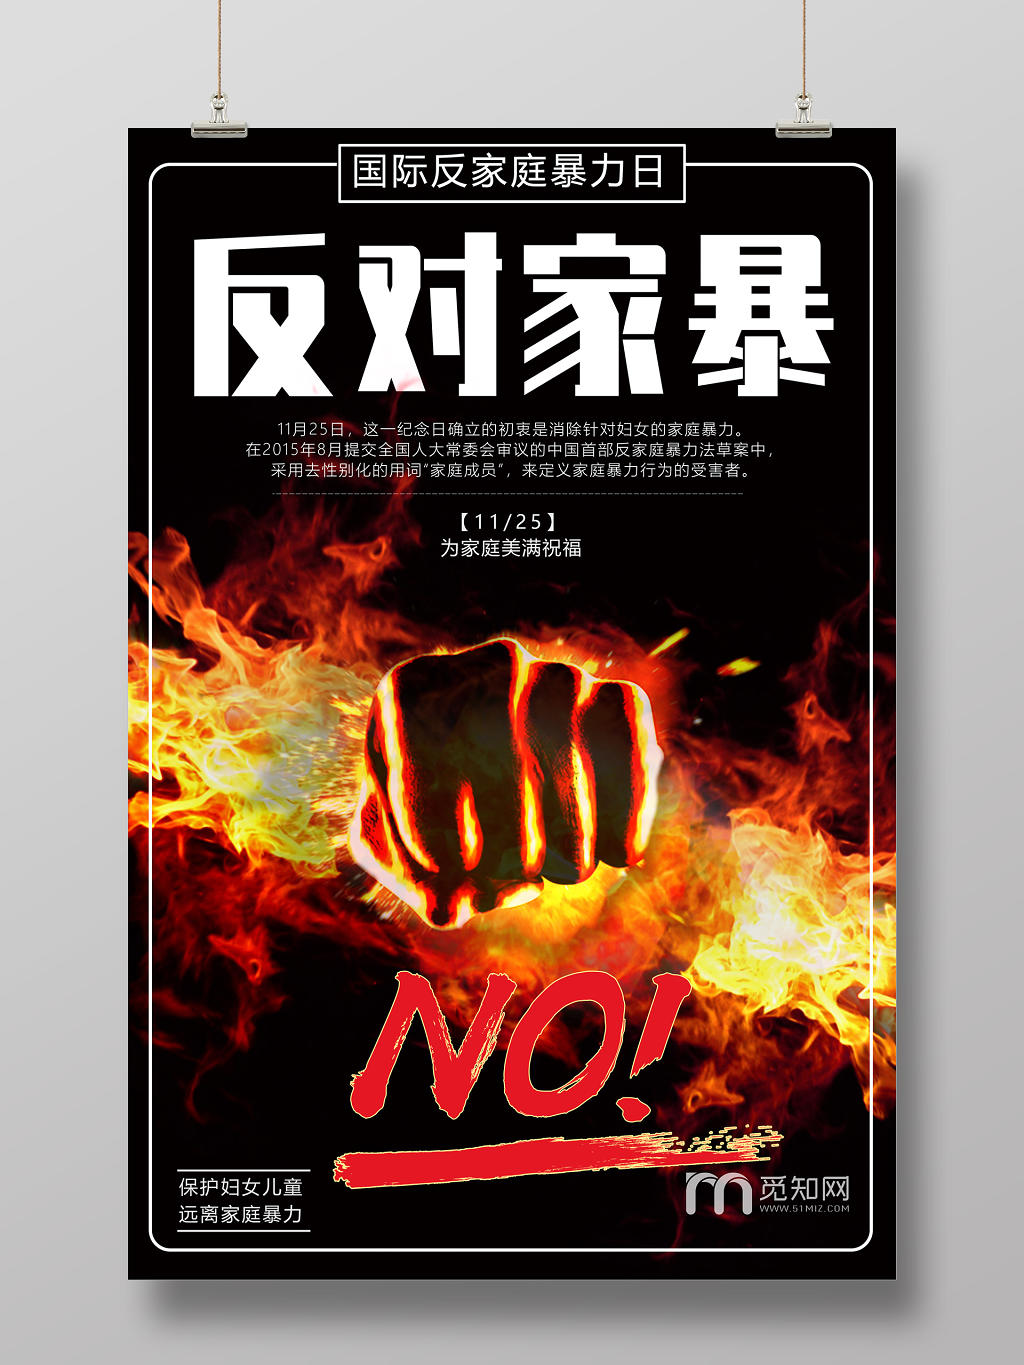 黑色火焰反对家暴反对家庭暴力抵制家暴宣传海报